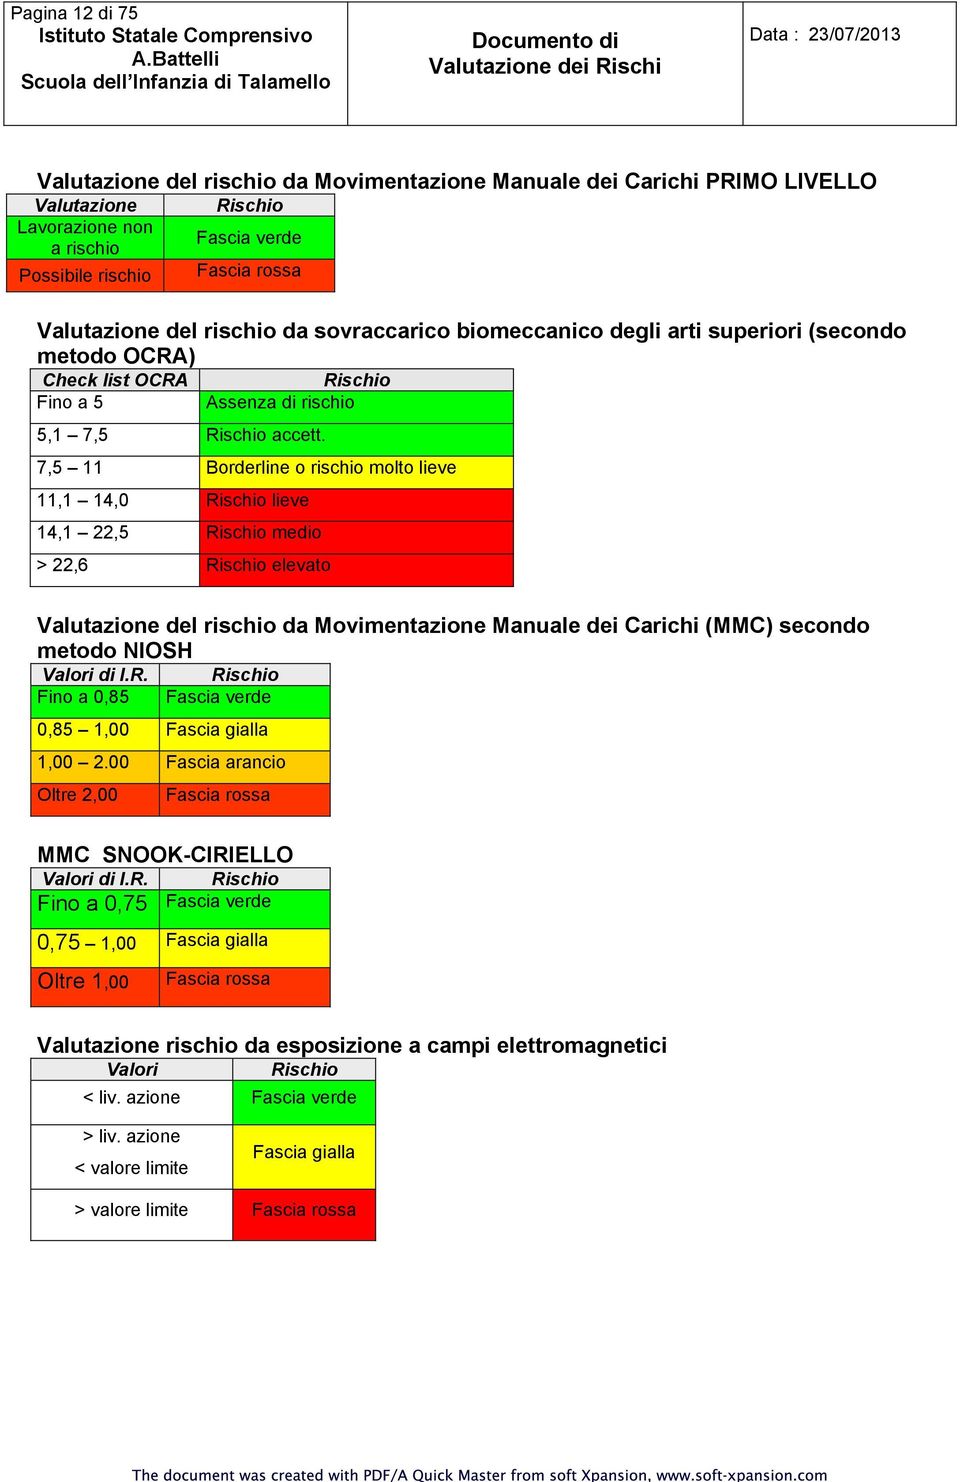 7,5 11 Borderline o rischio molto lieve 11,1 14,0 Rischio lieve 14,1 22,5 Rischio medio > 22,6 Rischio elevato Valutazione del rischio da Movimentazione Manuale dei Carichi (MMC) secondo metodo NIOSH